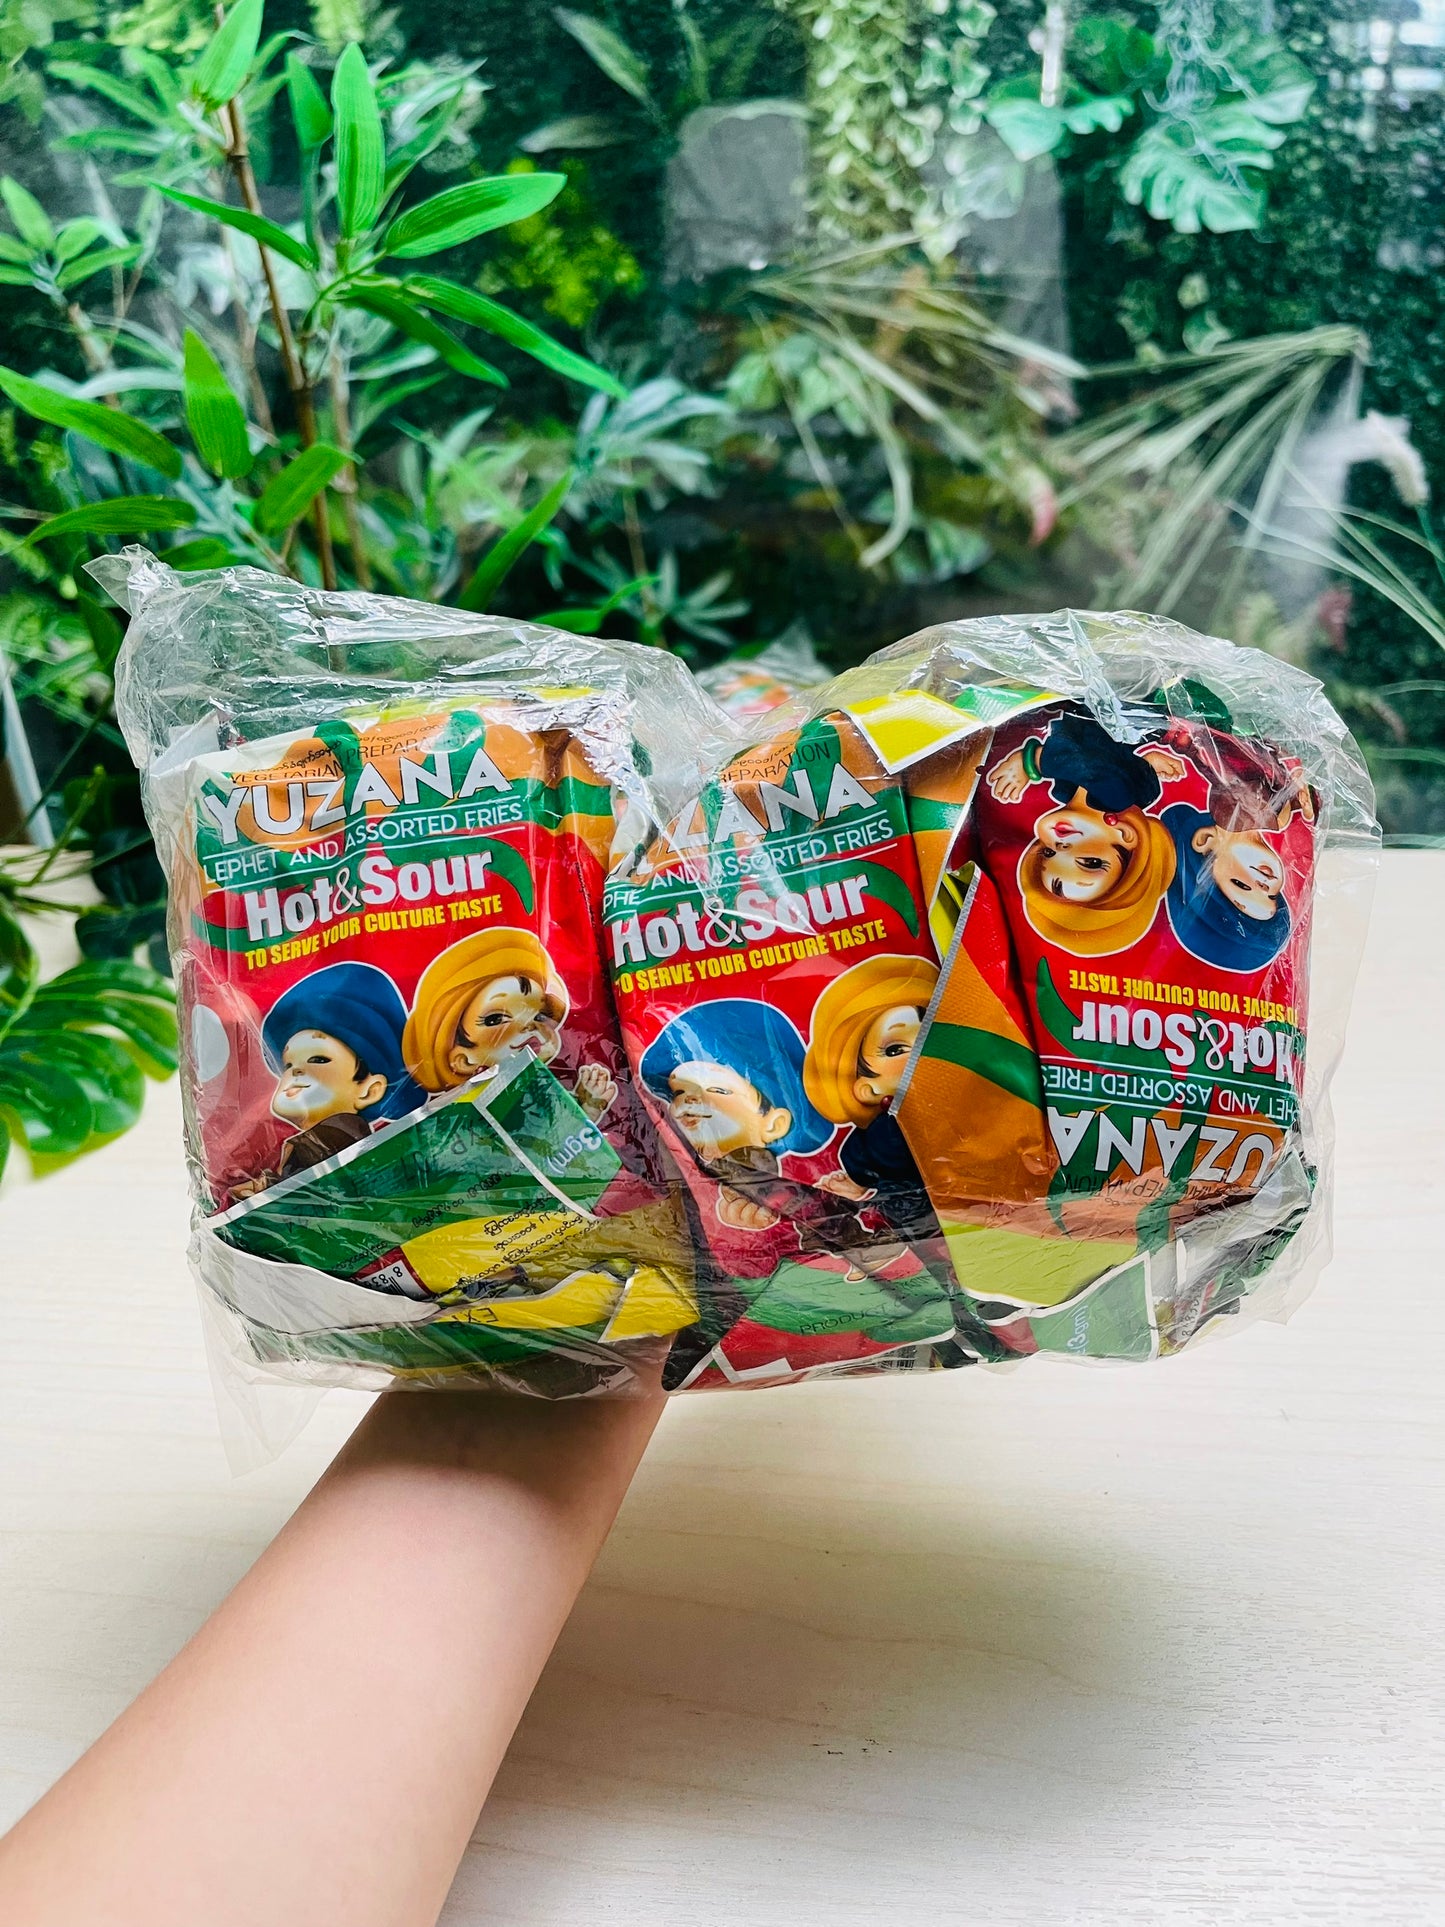 Yuzana Myanmar Tea Leaf Salad Kit - Hot & Sour 64g x 10 Packs ချဉ်စပ်